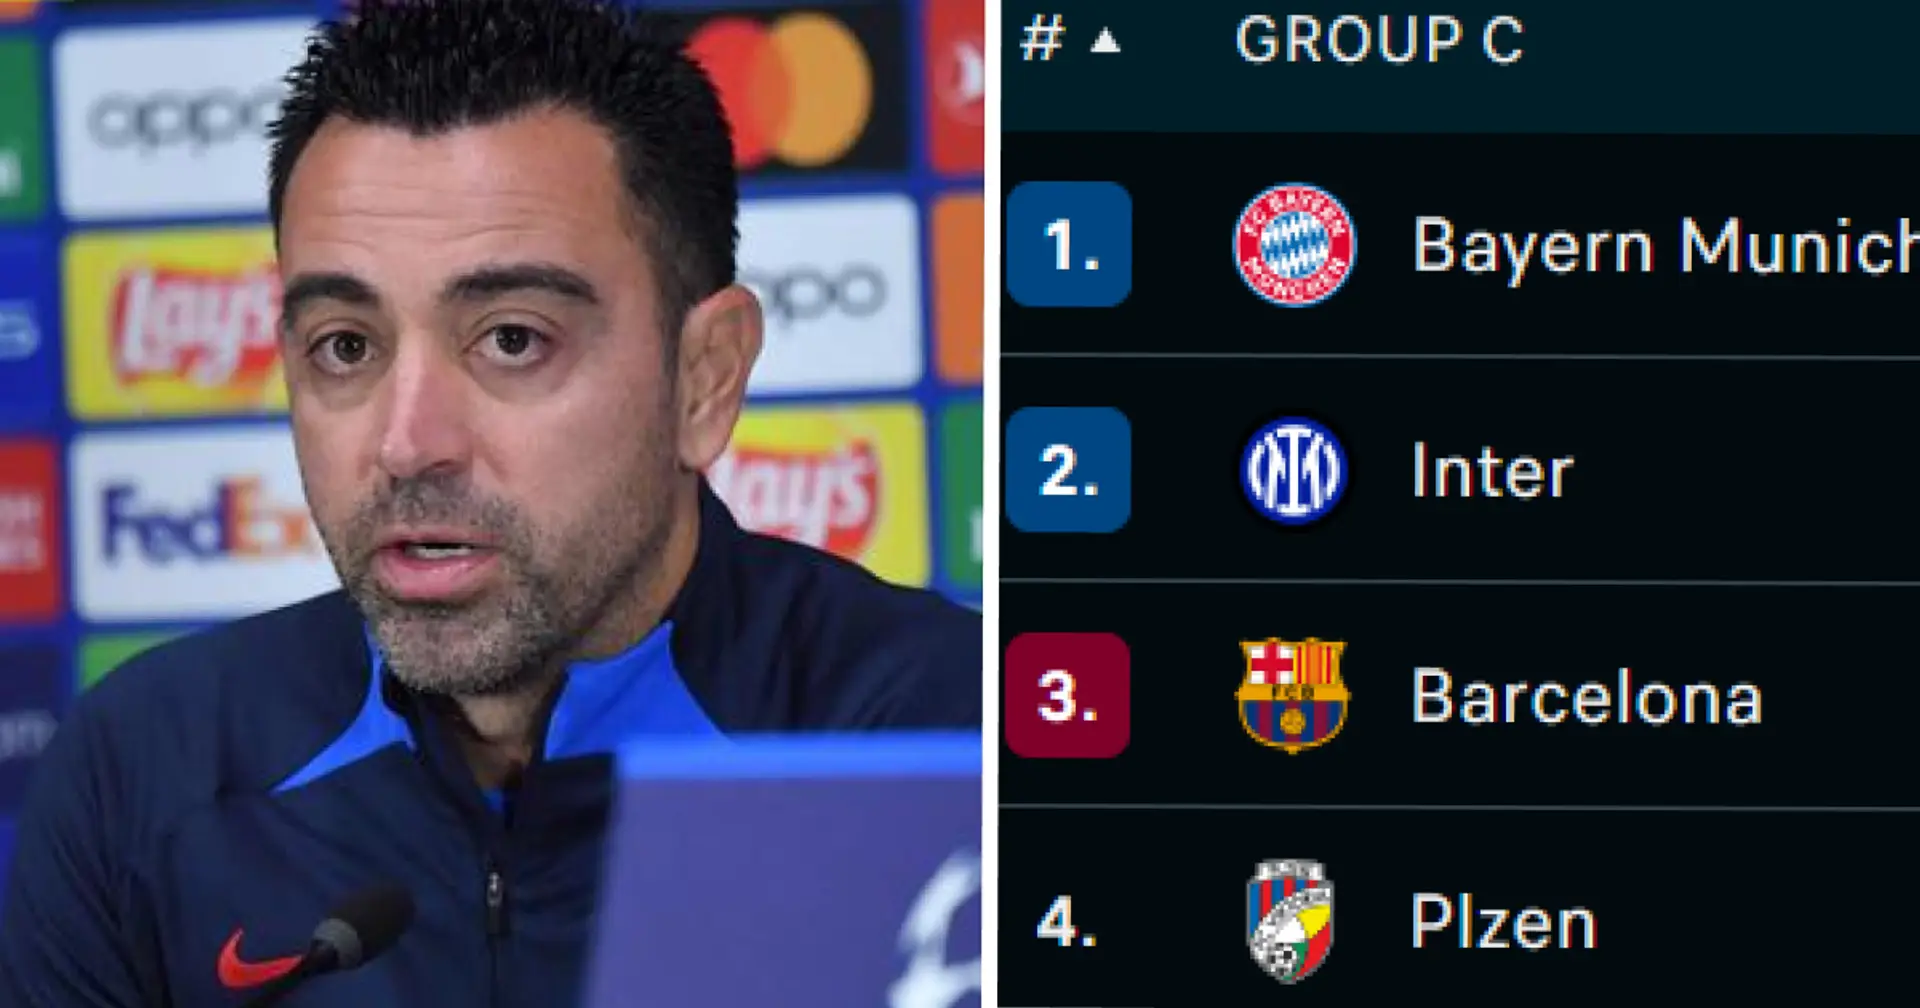 Le Barça proche de l'élimination en LDC et 3 autres grosses actus que vous avez peut-être manquées